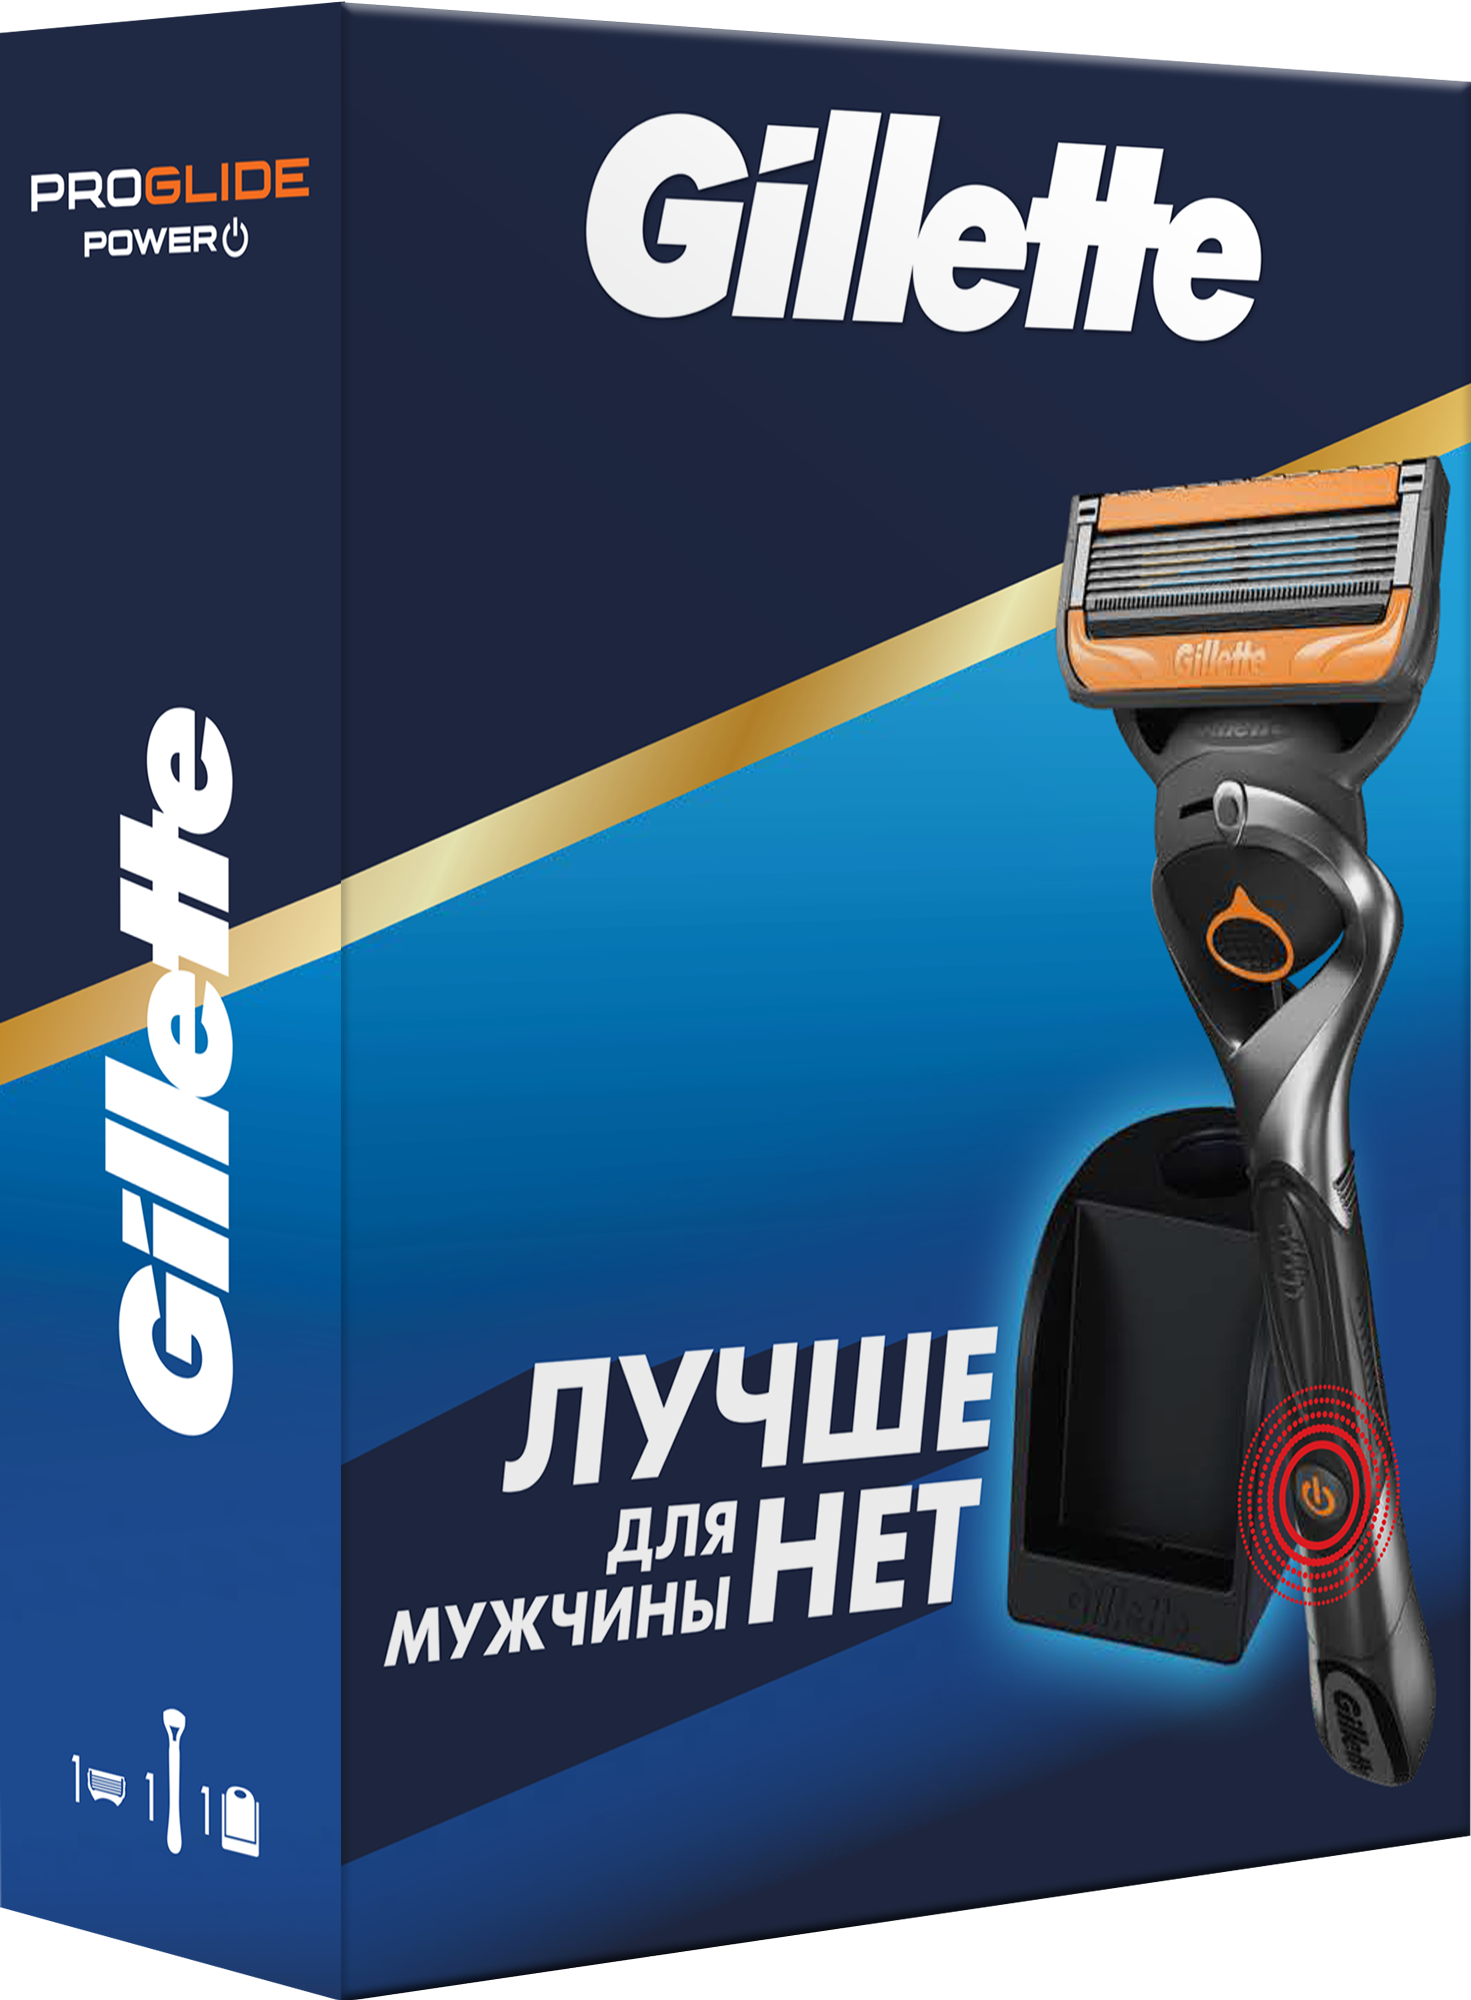 Набор Gillette ProGlide Power со станцией для бритвы и кассет, синий